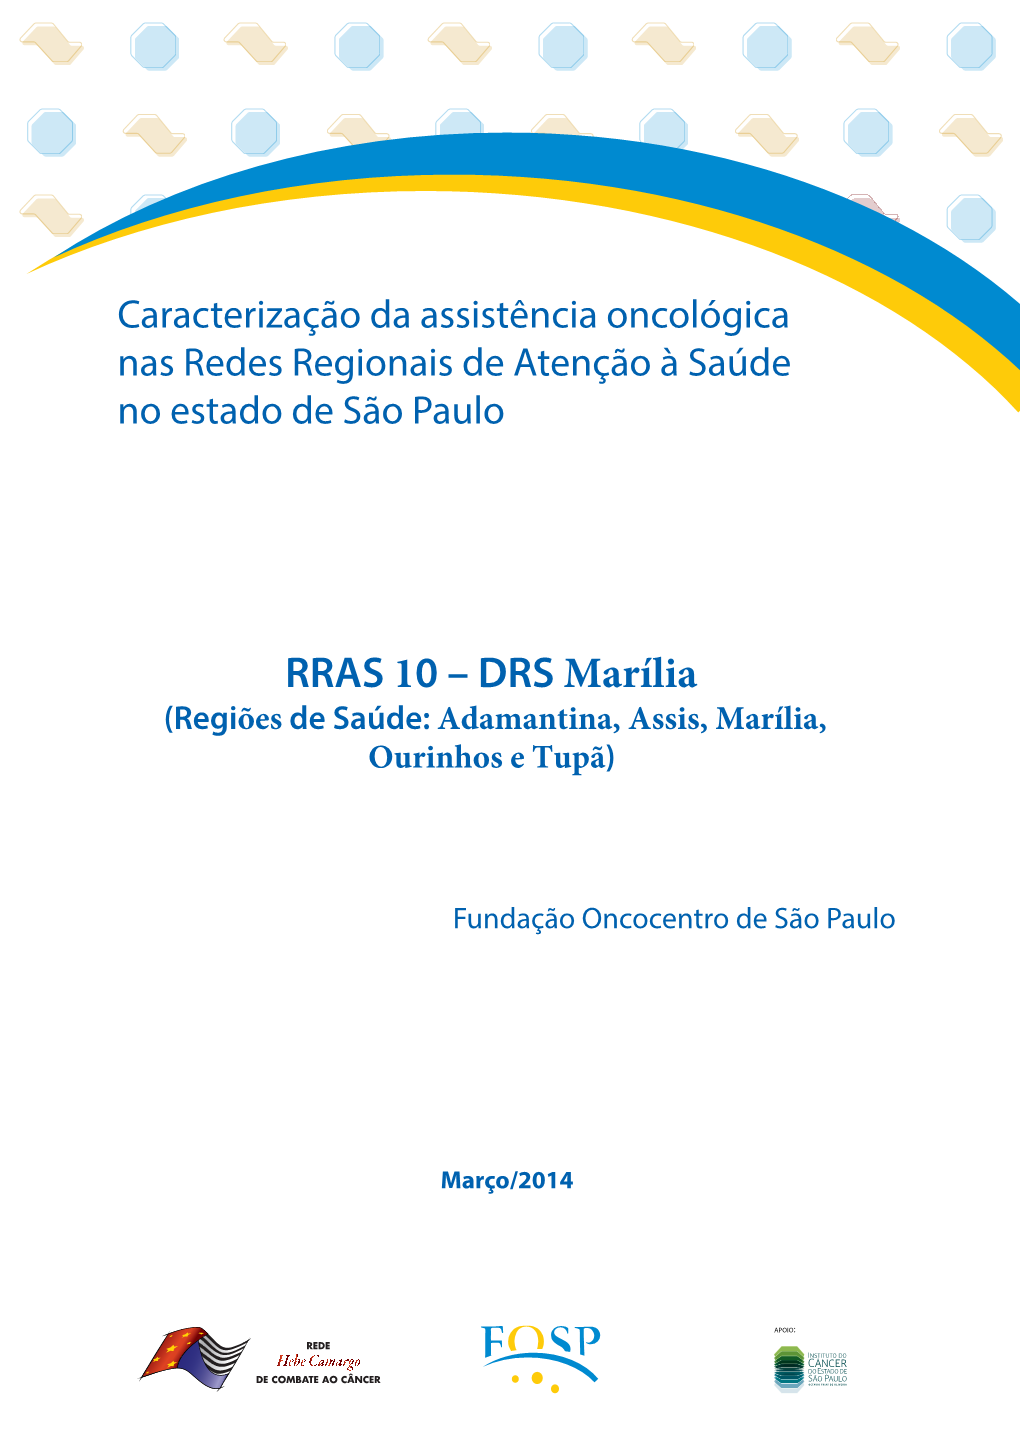 RRAS 10 – DRS Marília (Regiões De Saúde: Adamantina, Assis, Marília, Ourinhos E Tupã)